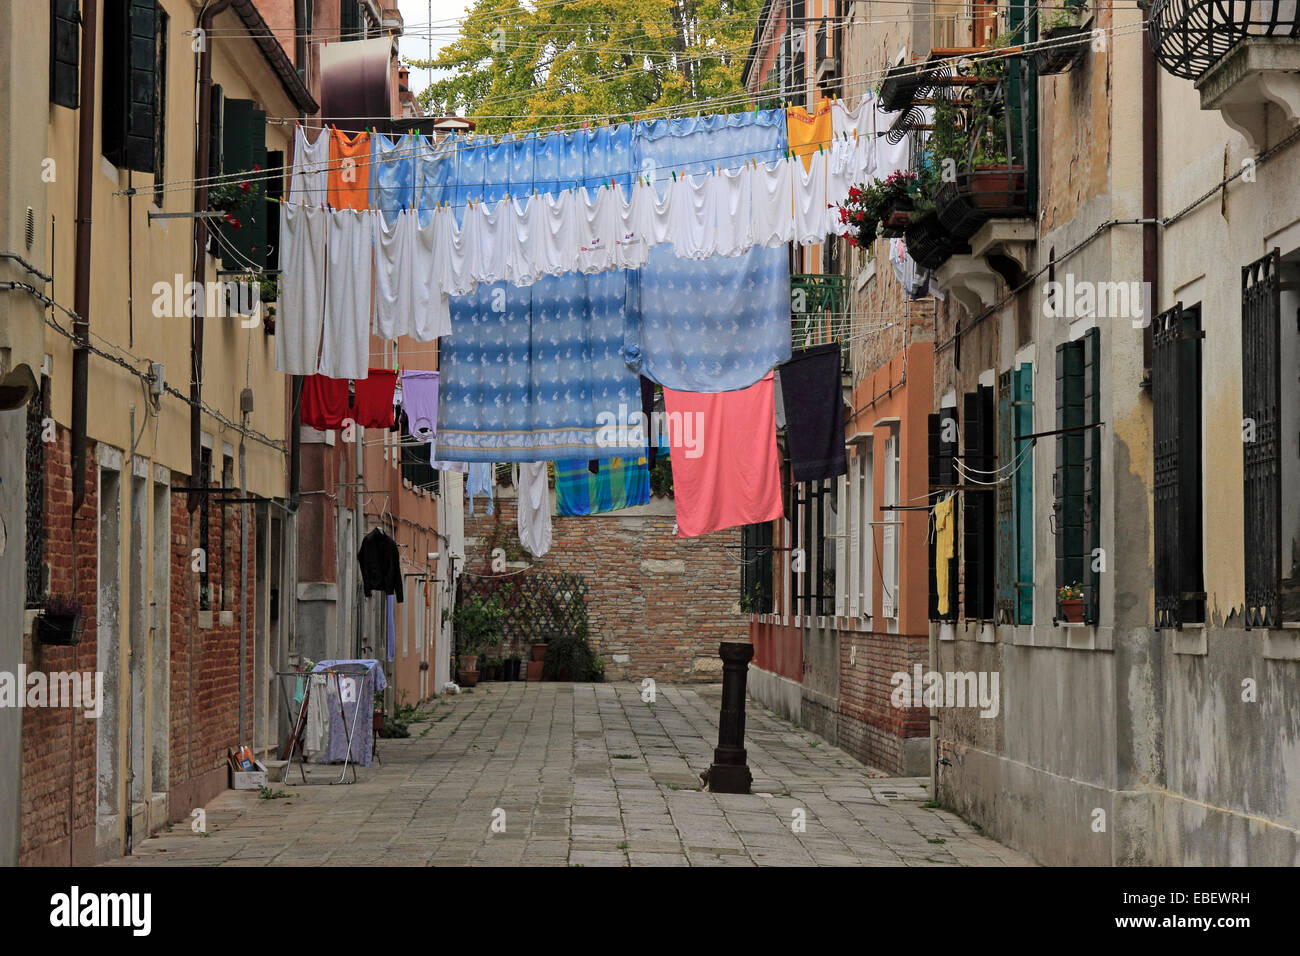 Venice Castello laundry day Stock Photo